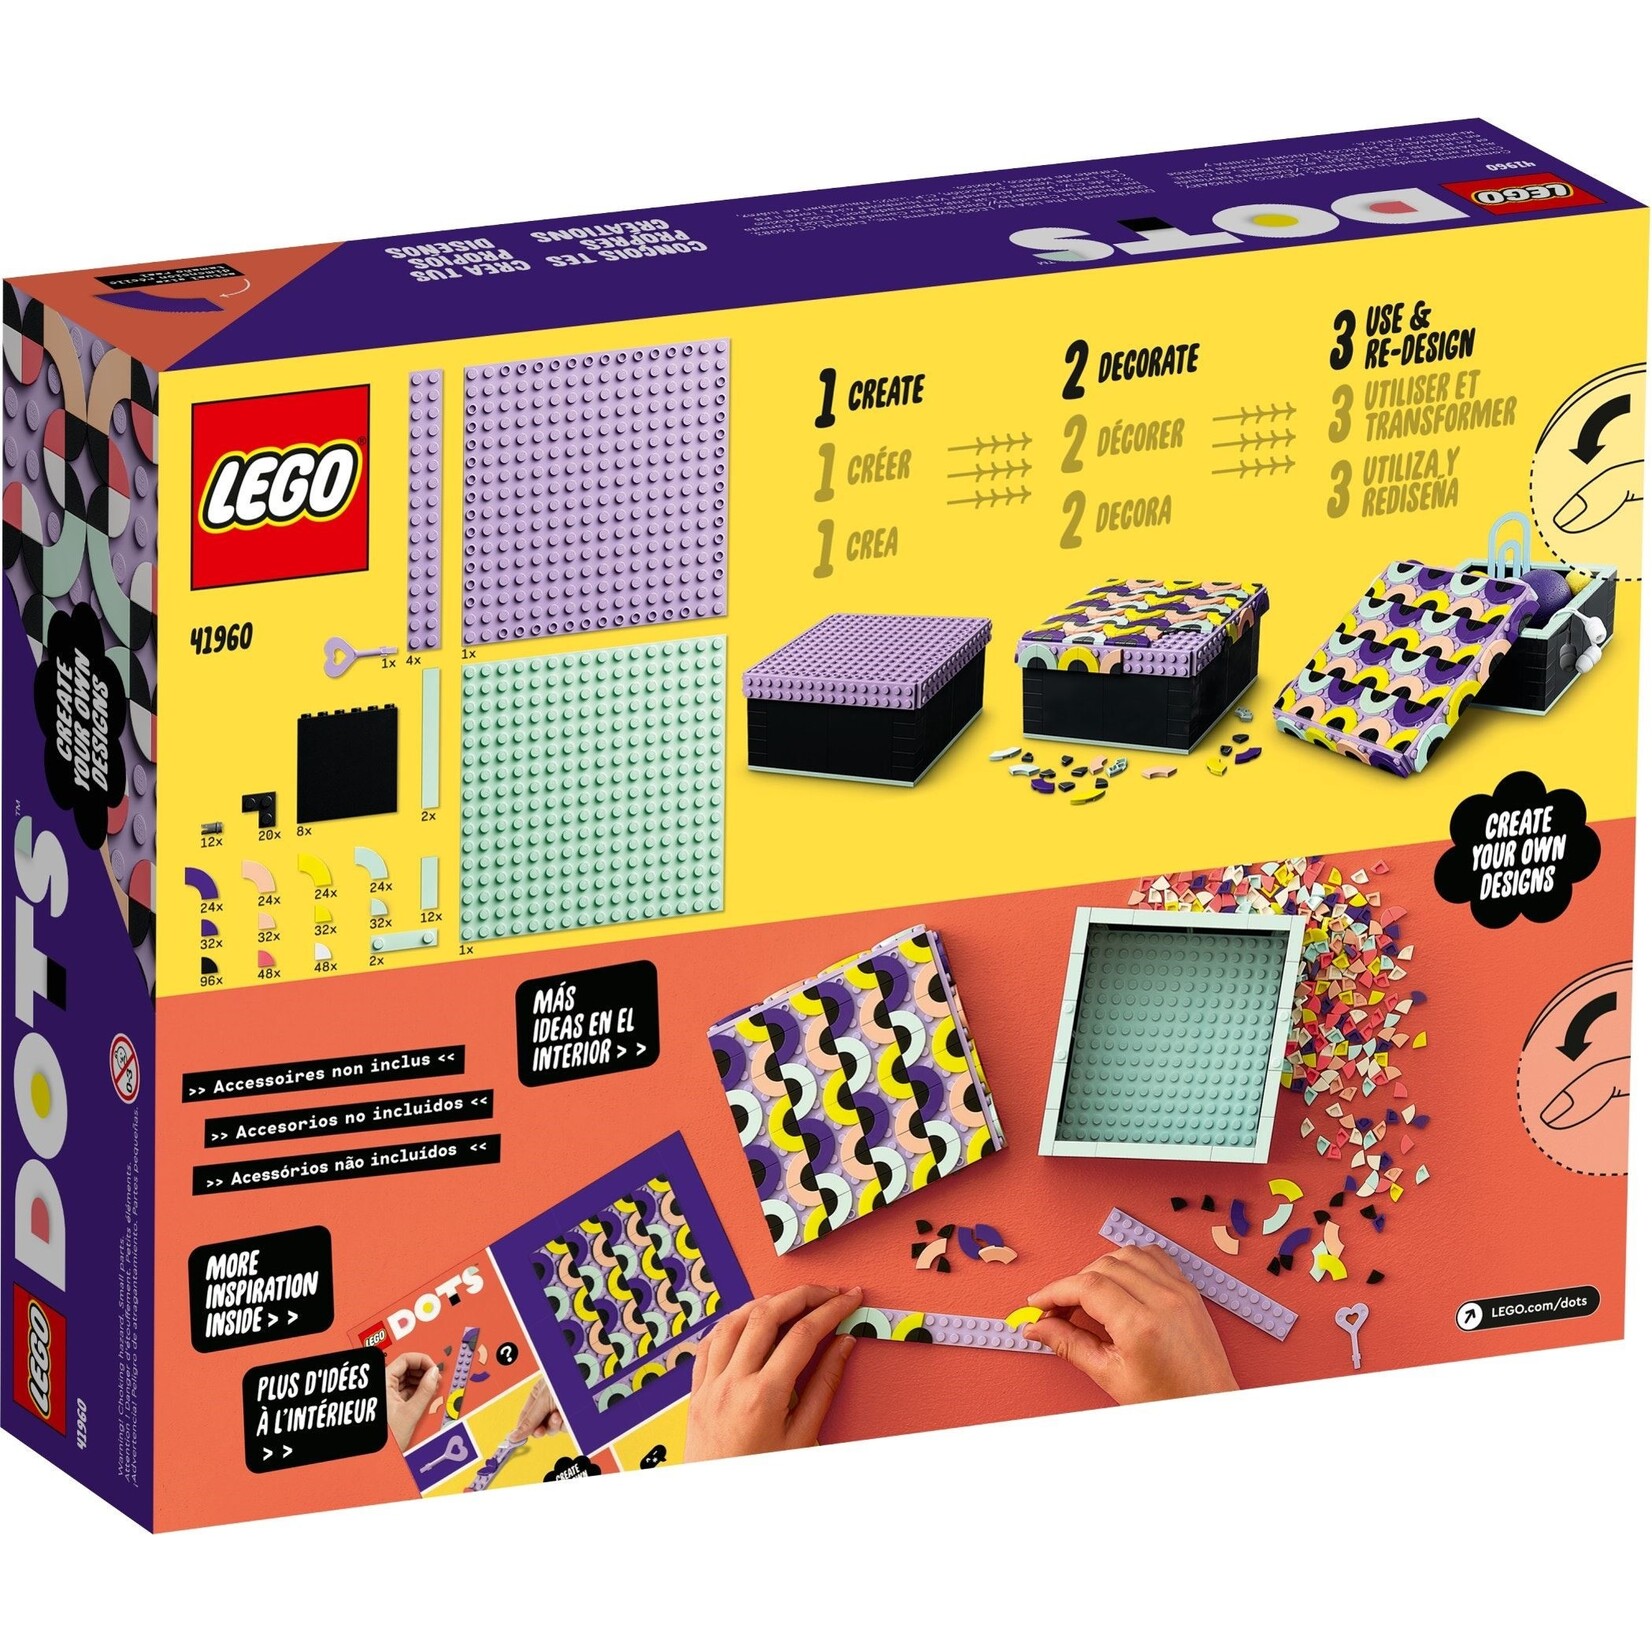 LEGO Grote Doos - 41960